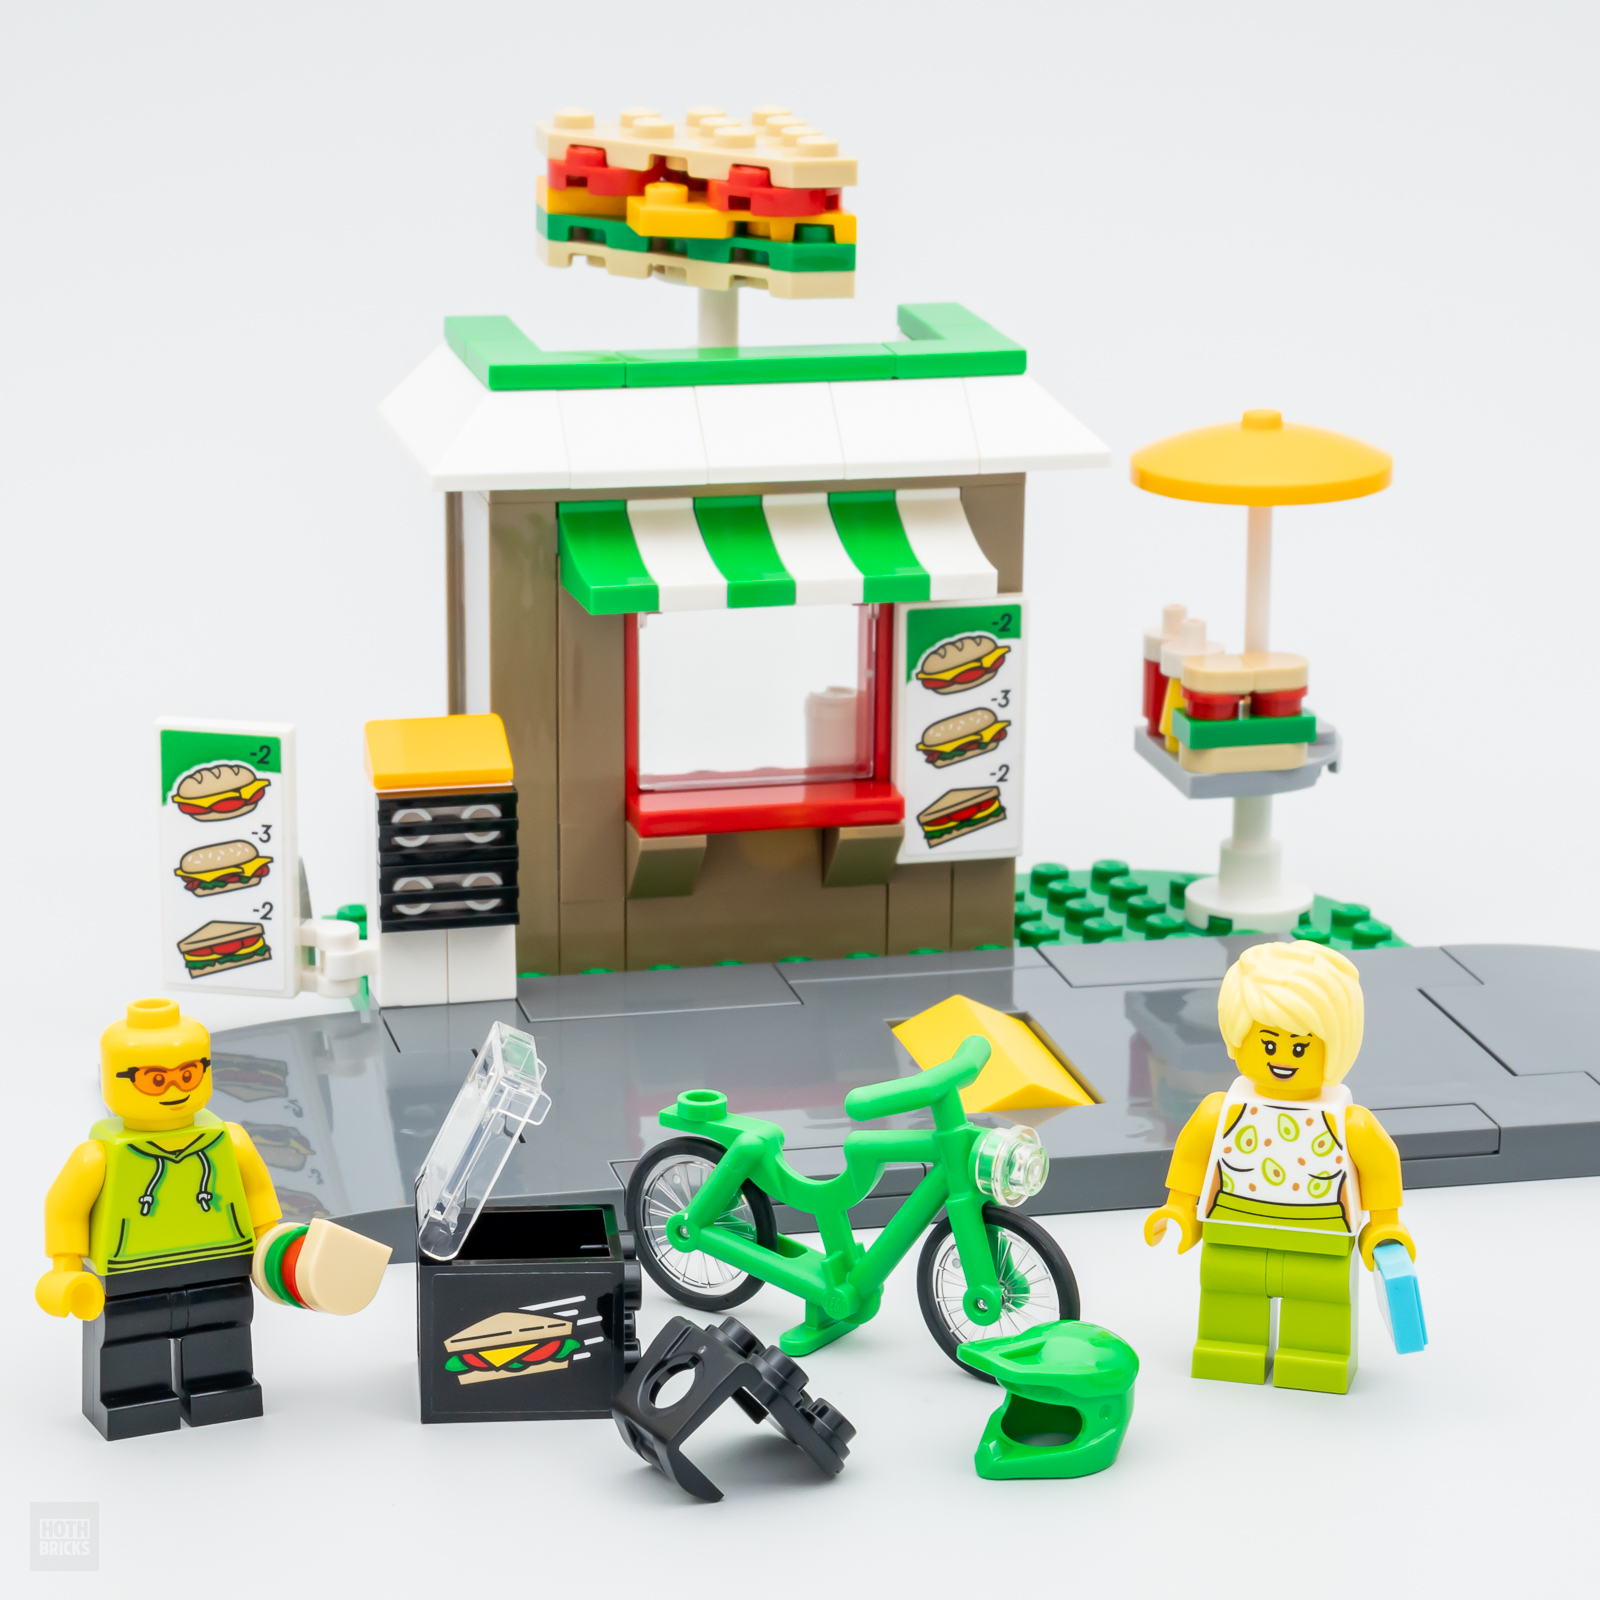 LEGO მაღაზიაში: LEGO CITY 40578 სენდვიჩების ნაკრები უფასოა 90 ევროზე მეტი შესყიდვით